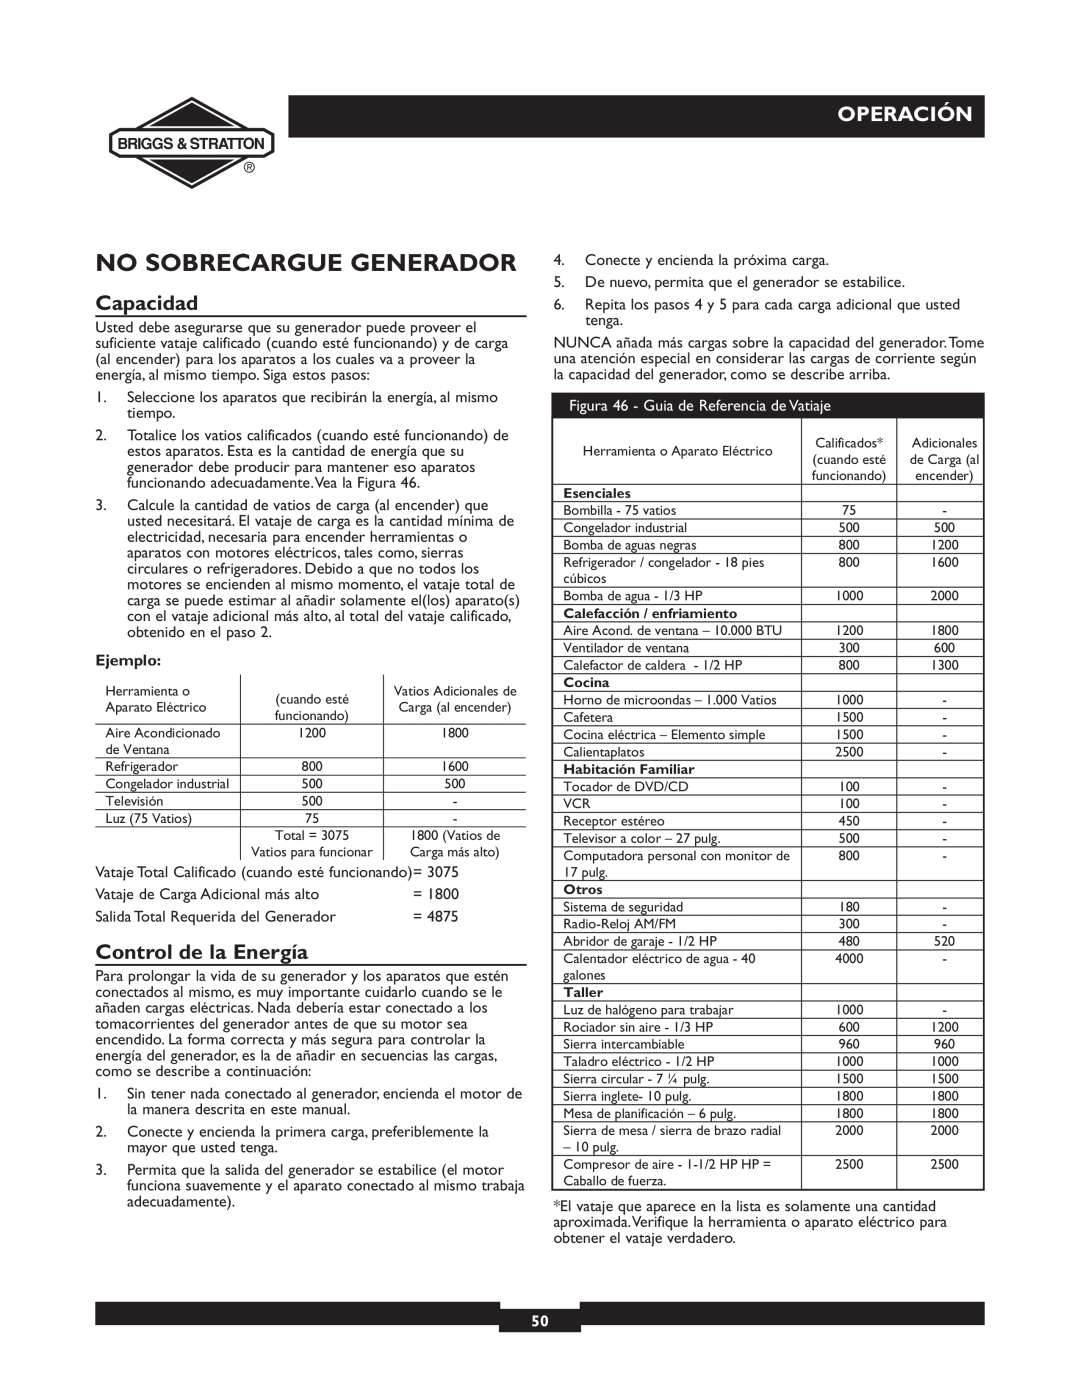 Briggs & Stratton 01894-1 manual No Sobrecargue Generador, Capacidad, Control de la Energía, Operación, Ejemplo 